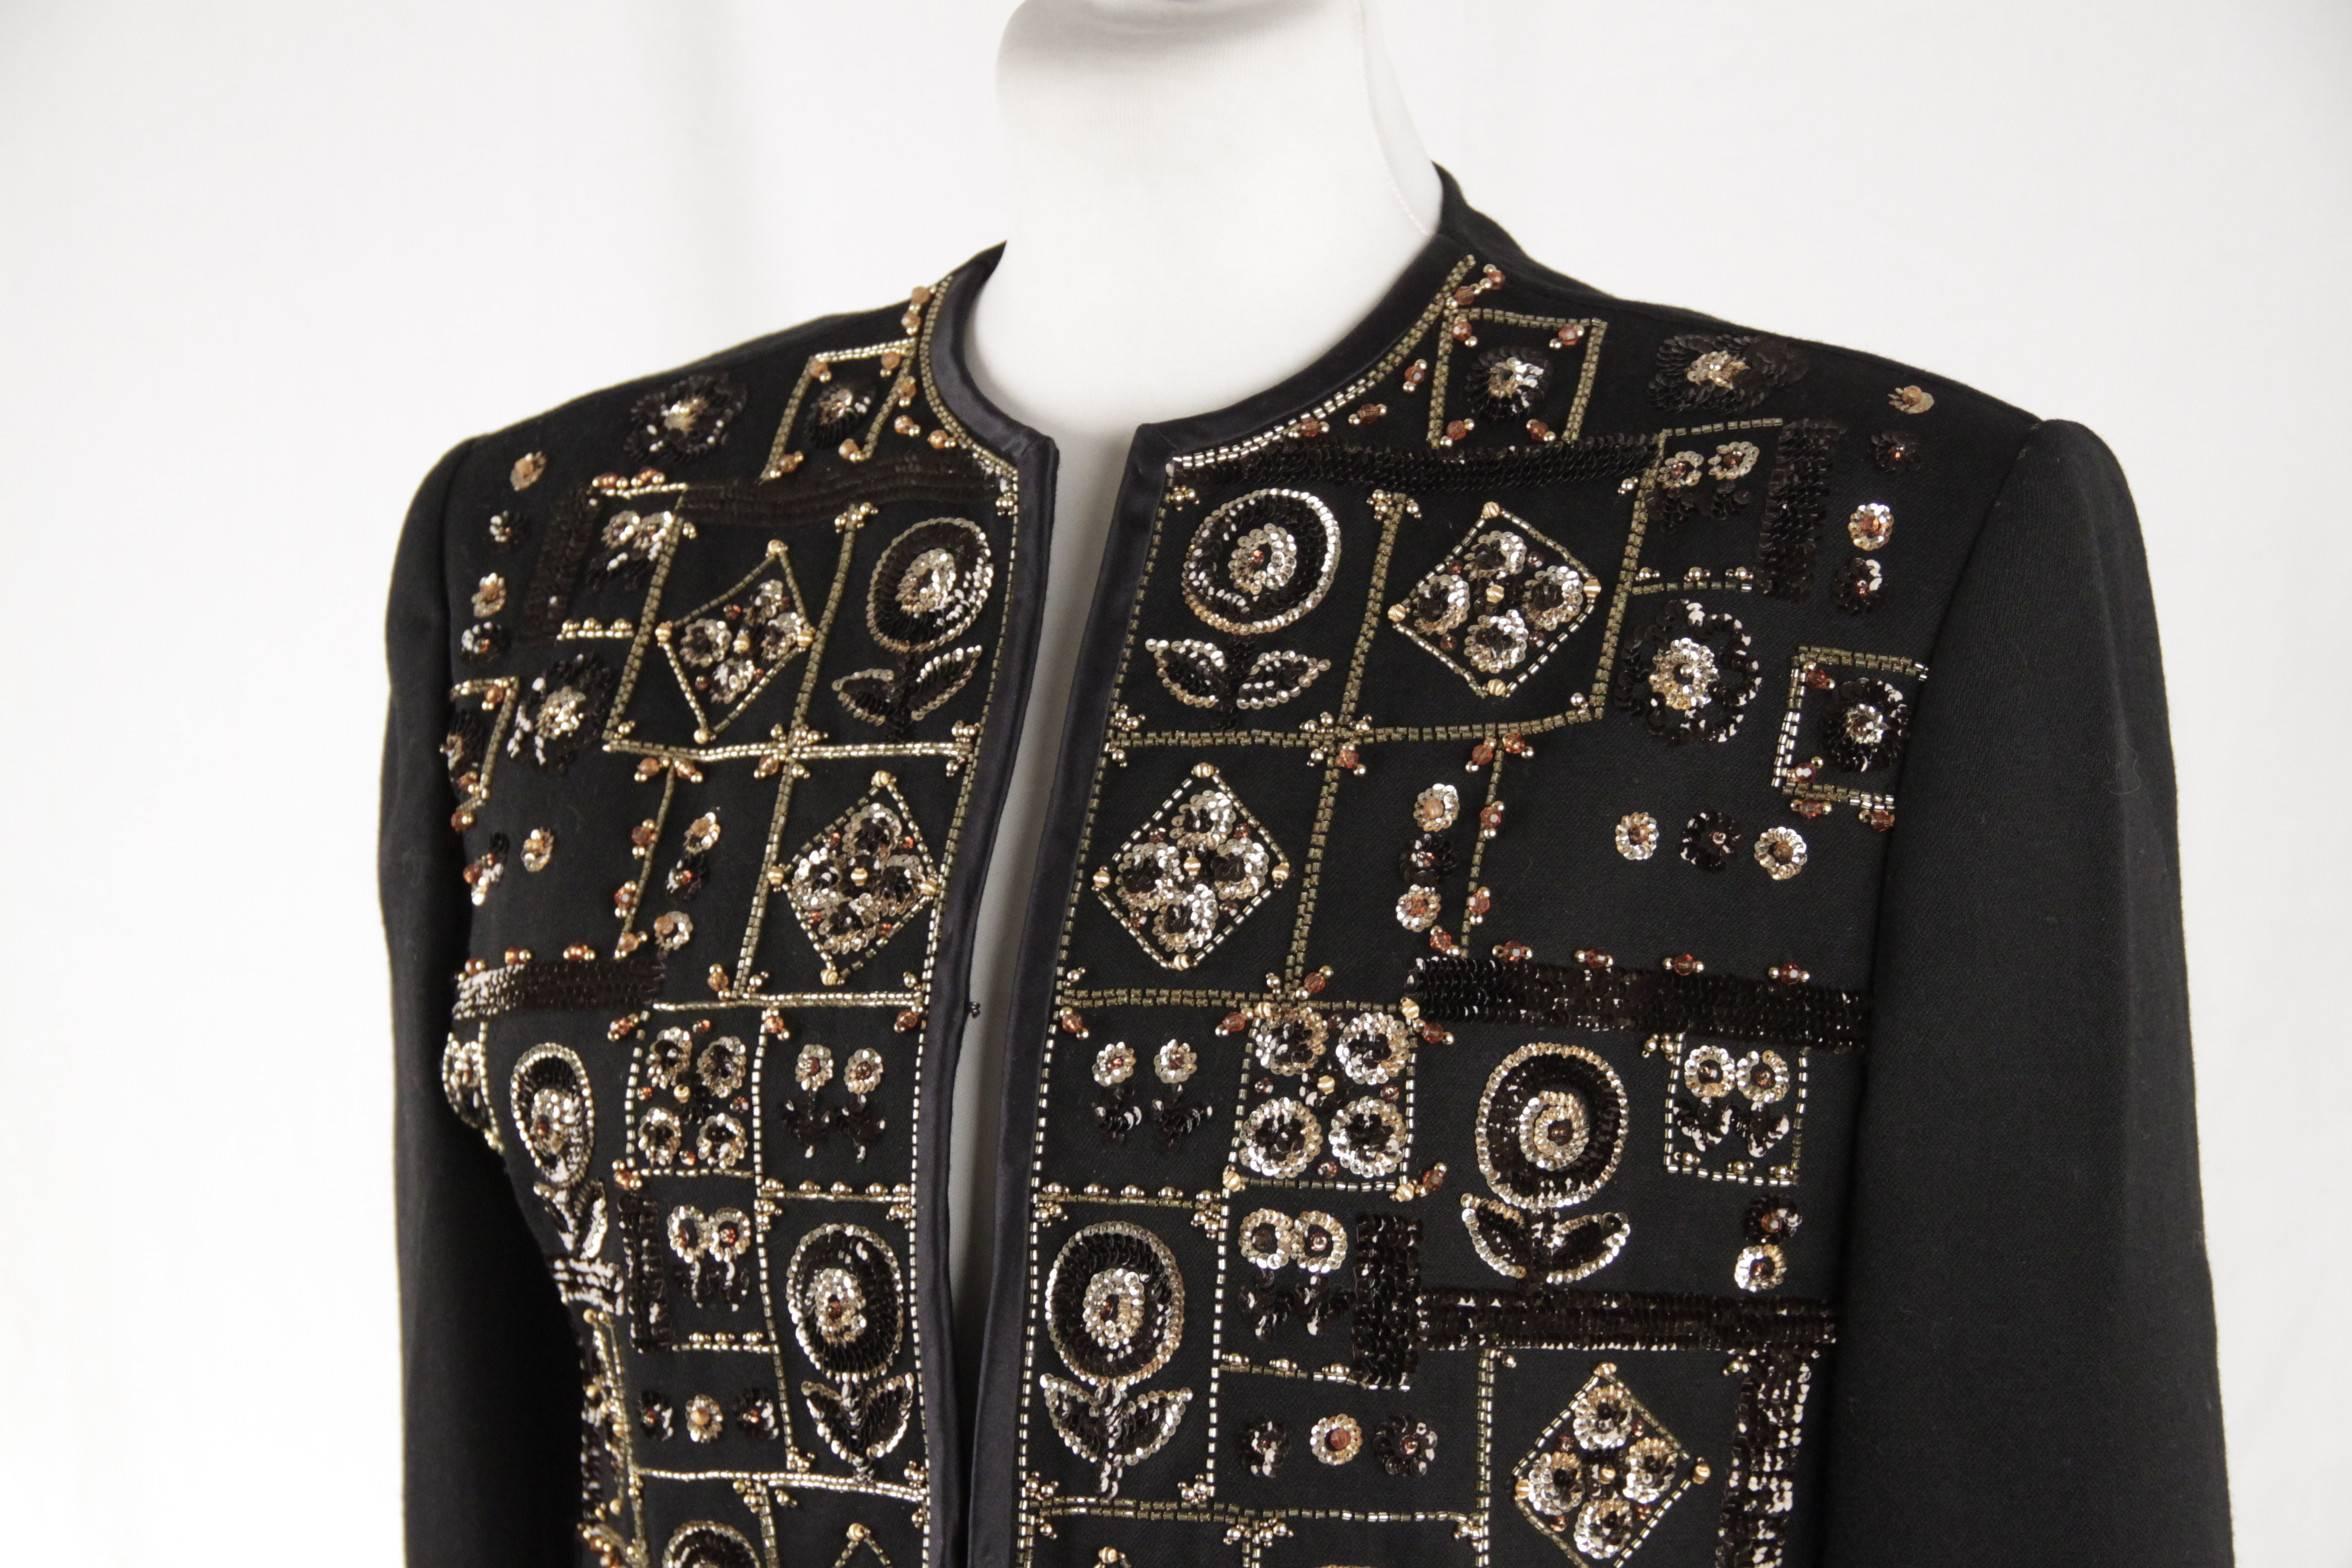 ANDRE LAUG Vintage Black Embellished EVENING JACKET Beads & Sequins 1